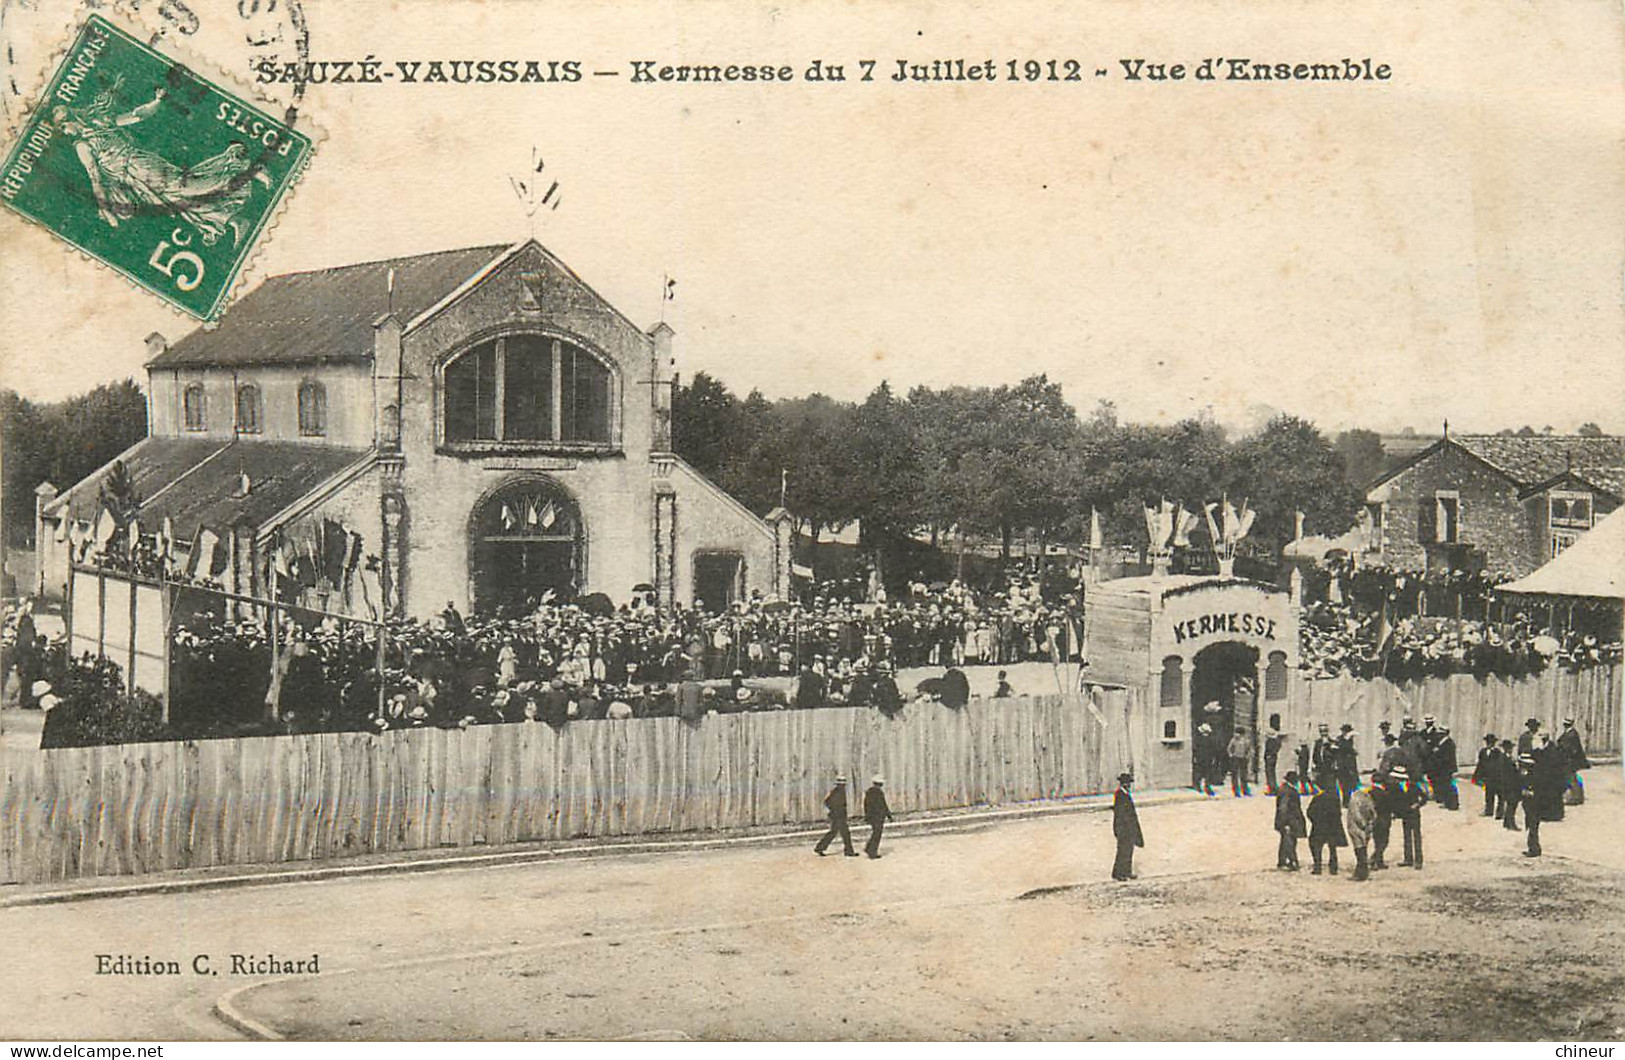 SAUZE VAUSSAIS KERMESSE DU 7 JUILLET 1912 VUE D'ENSEMBLE - Sauze Vaussais